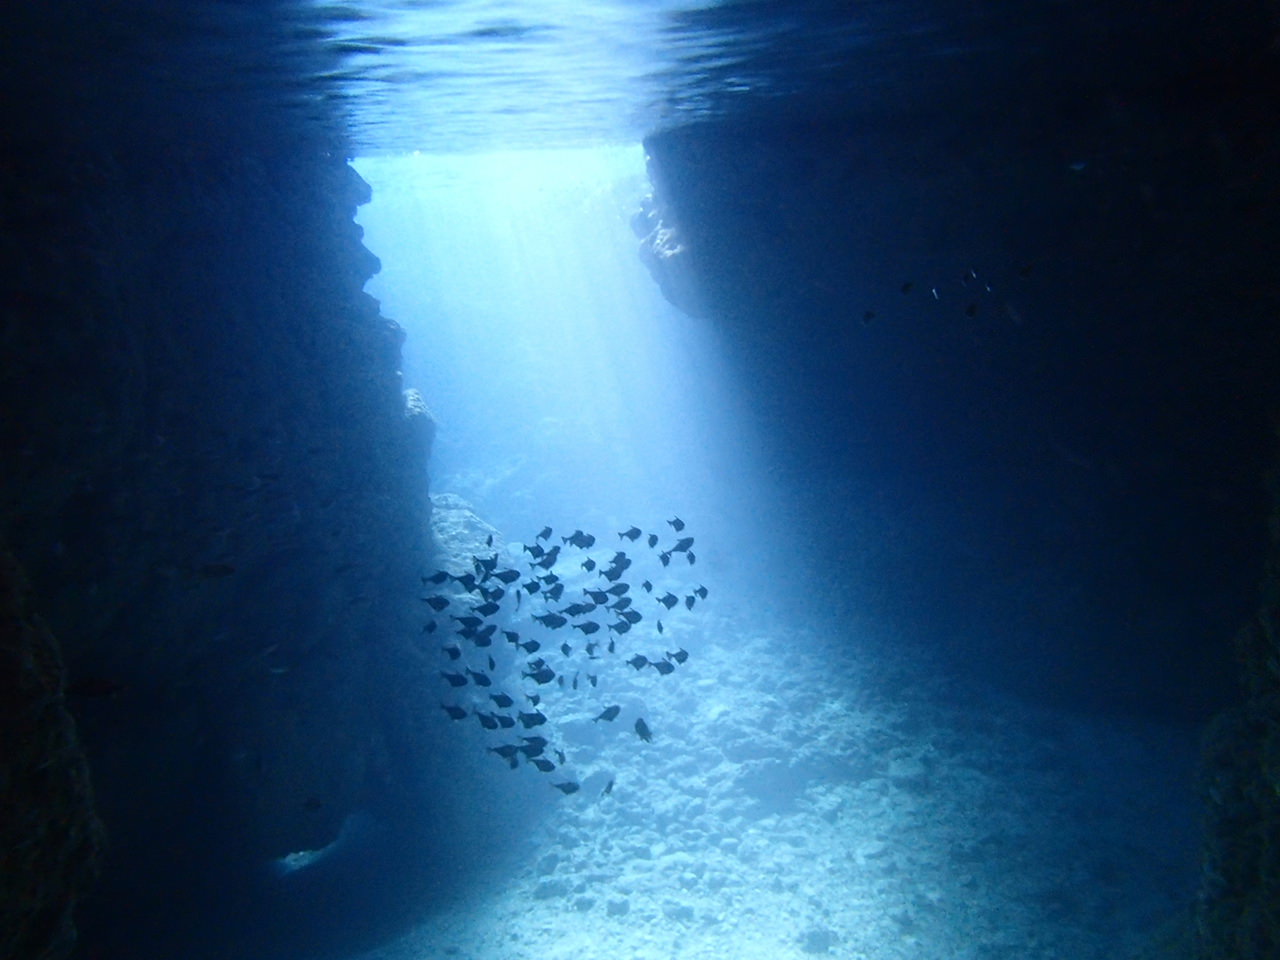 沖繩潛水推薦|Natural Blue自然之藍|沖繩潛水體驗評價|看見青之洞窟最美海底世界~跟著魚群悠游拍美照!